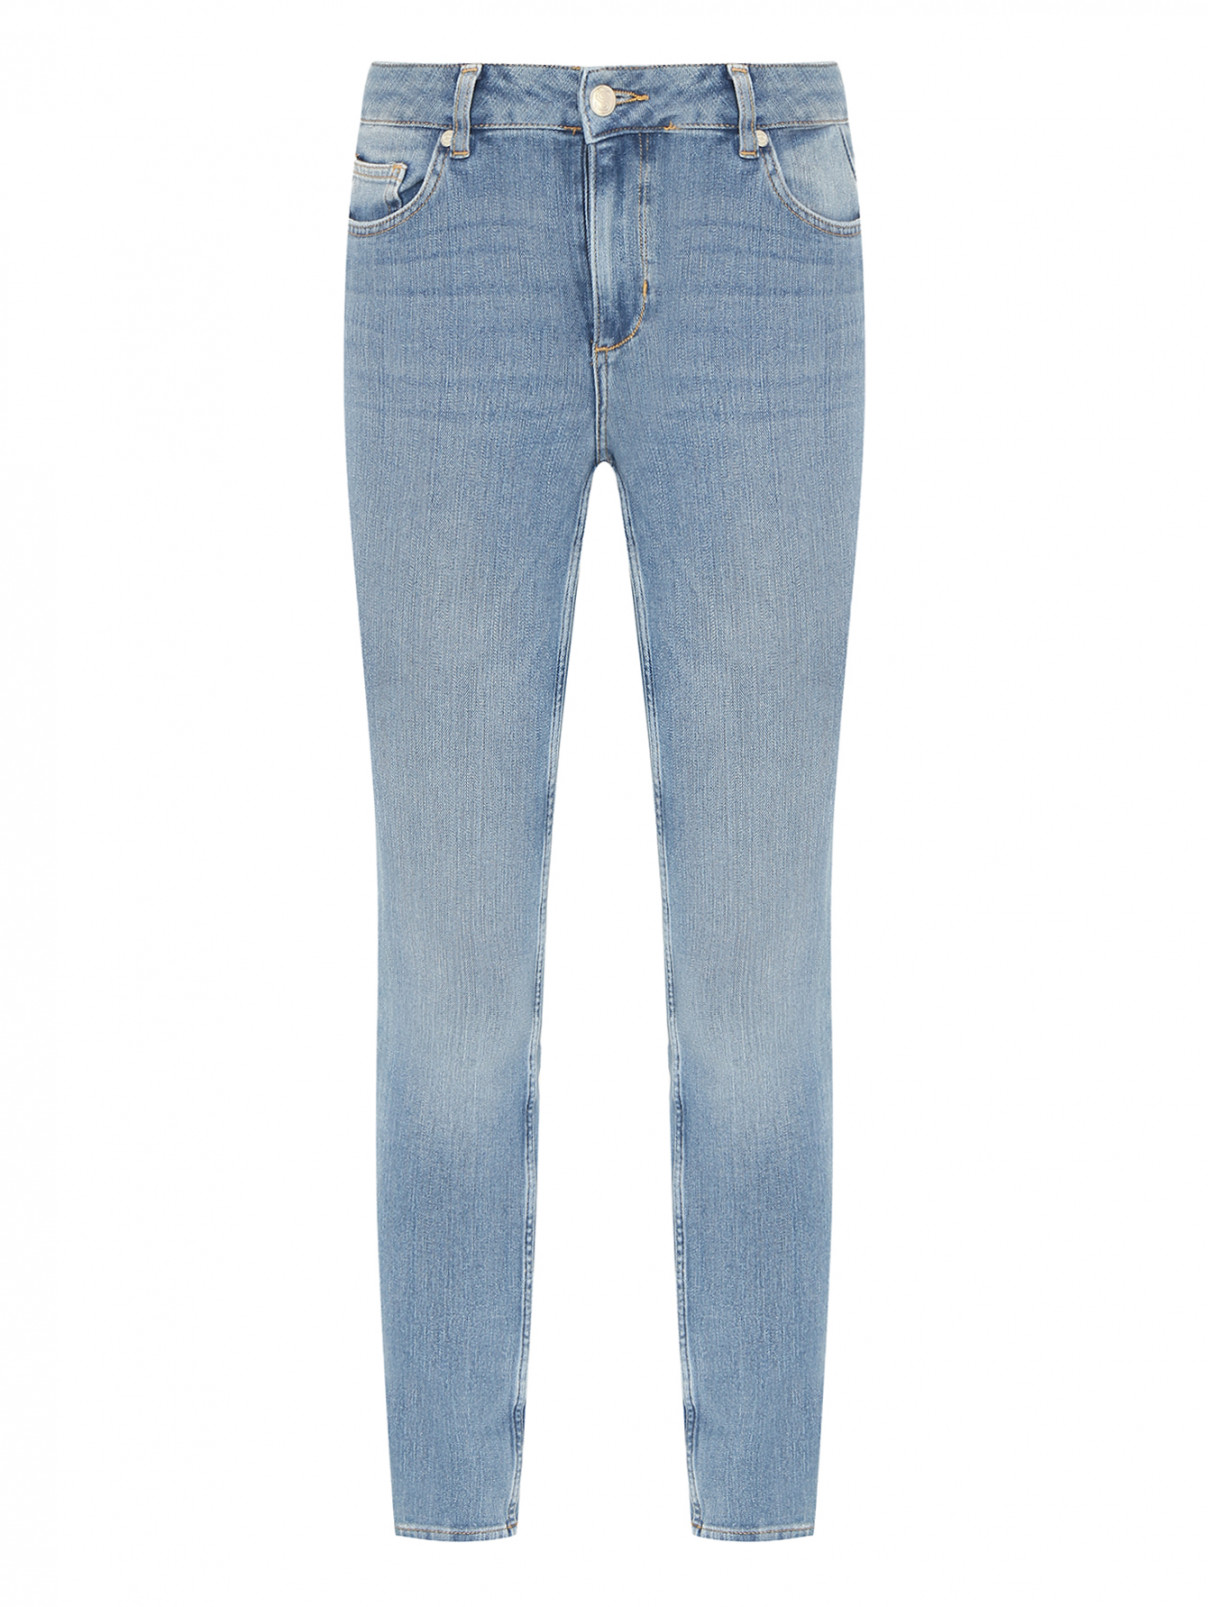 Зауженные джинсы с карманами SILVIAN HEACH  –  Общий вид  – Цвет:  Синий